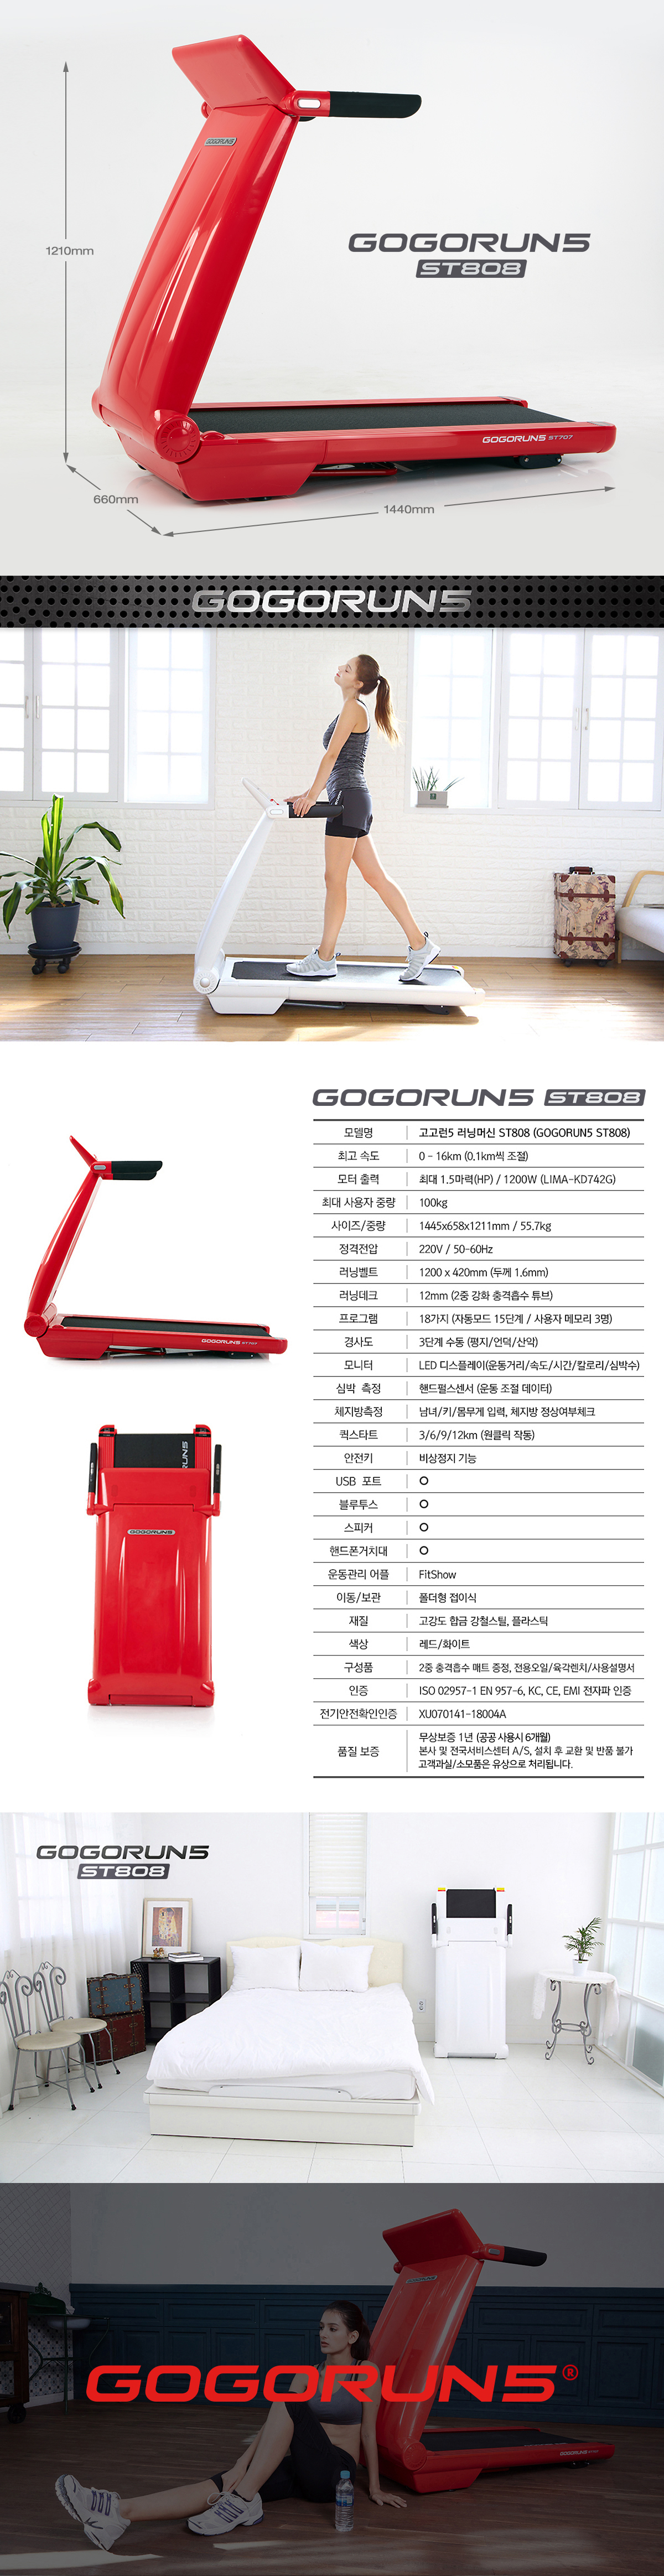 15_gogorun5_treadmill_016_172552.jpg